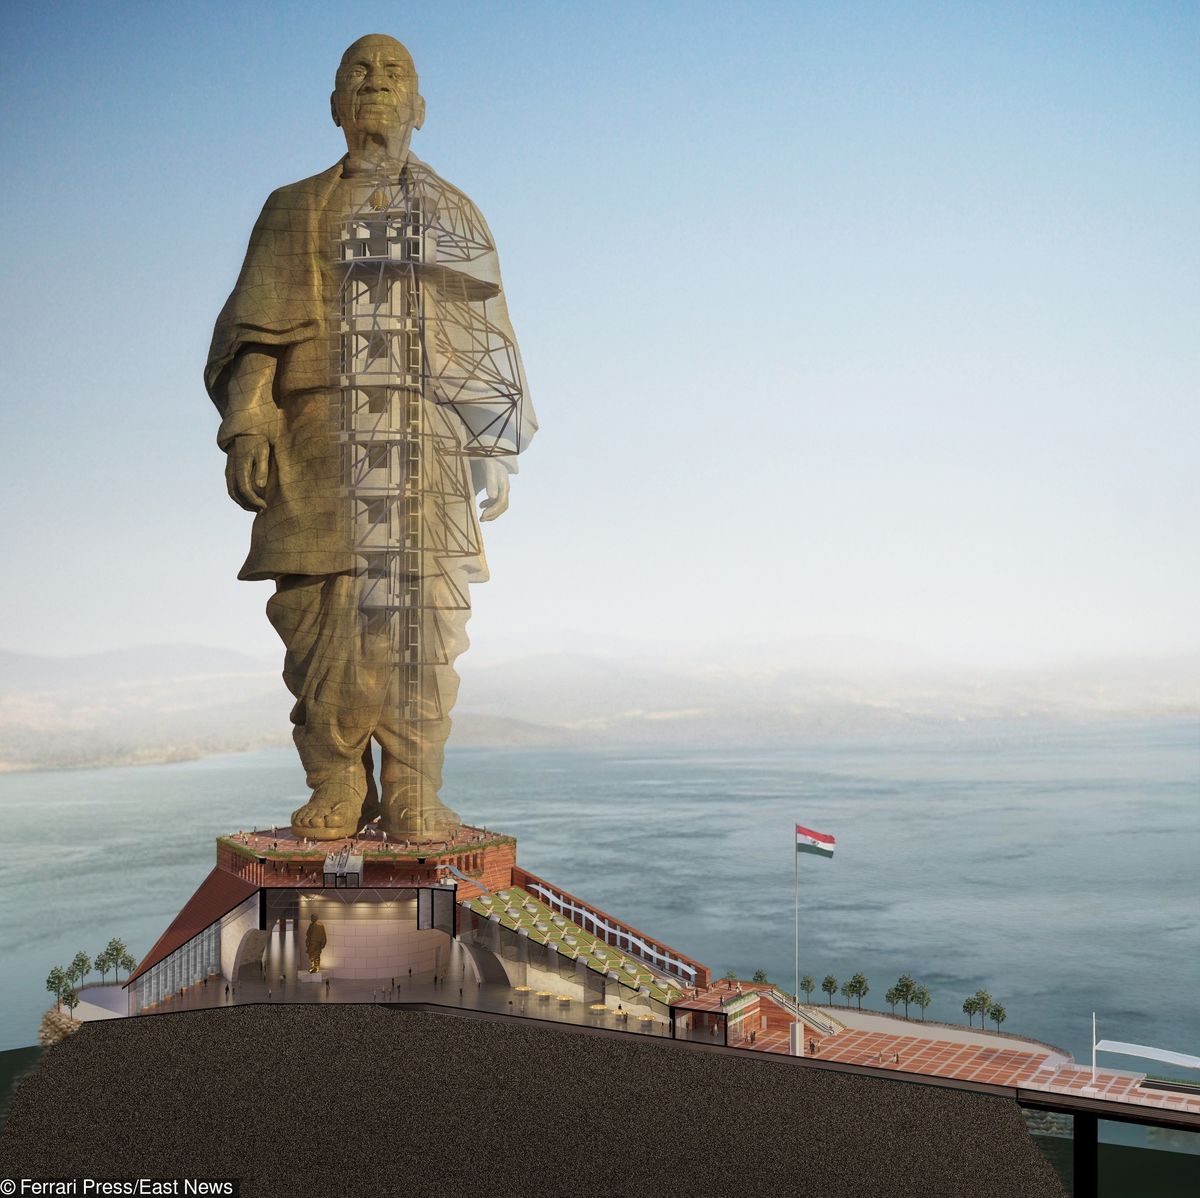 Powstaje największy pomnik na świecie. Będzie dwa razy wyższy od Statuy Wolności